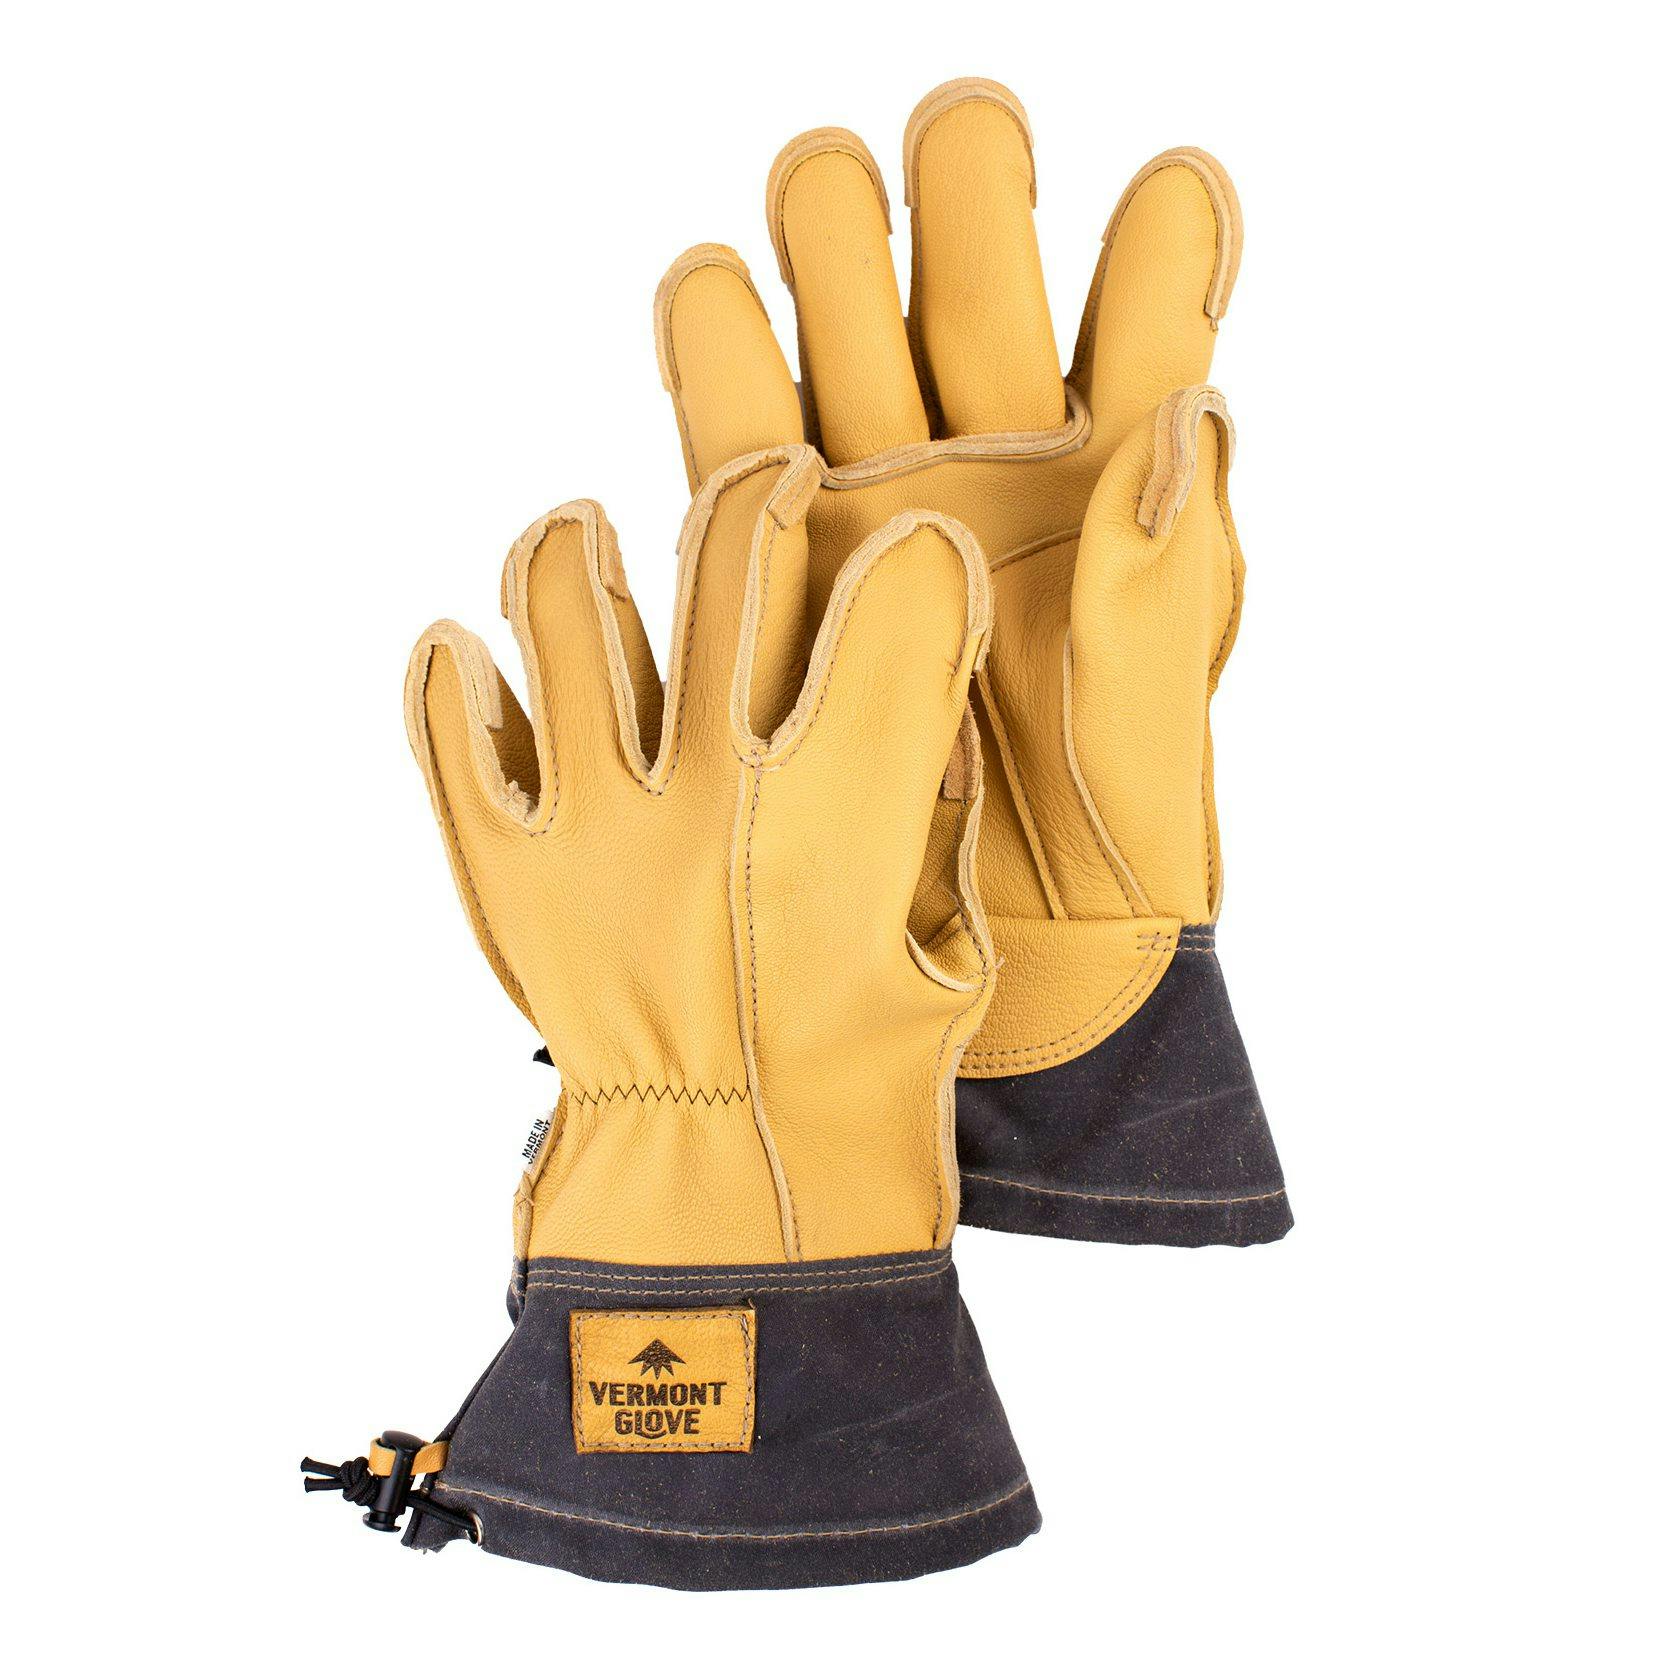 The Vermonter Work Gloves by Vermont Glove